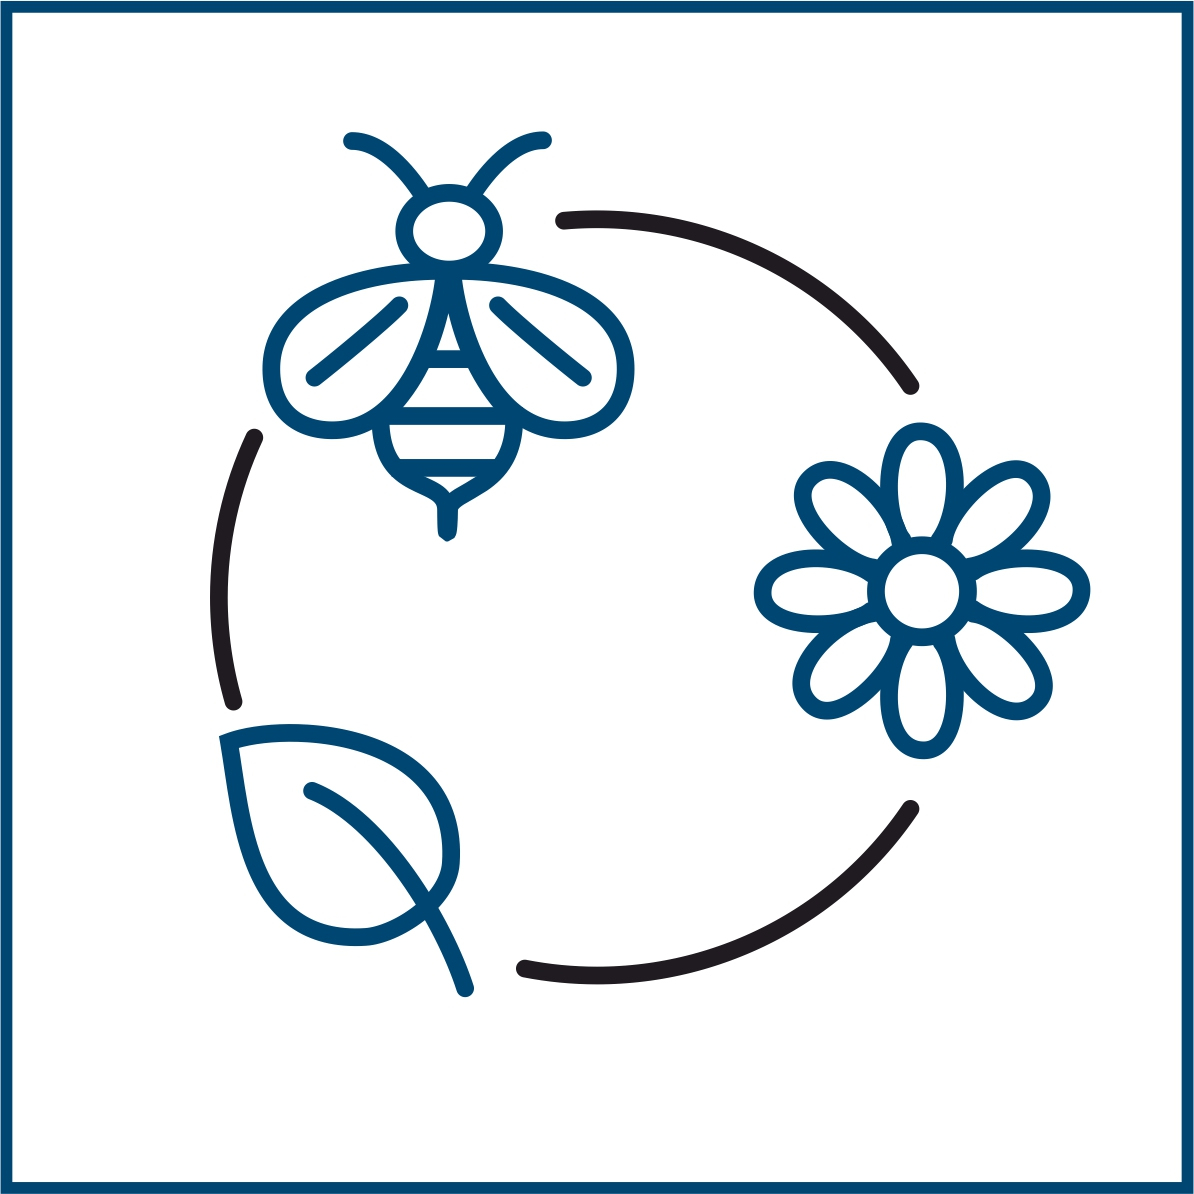 Piktogramm eines Kreises mit Biene, Blume und Blatt